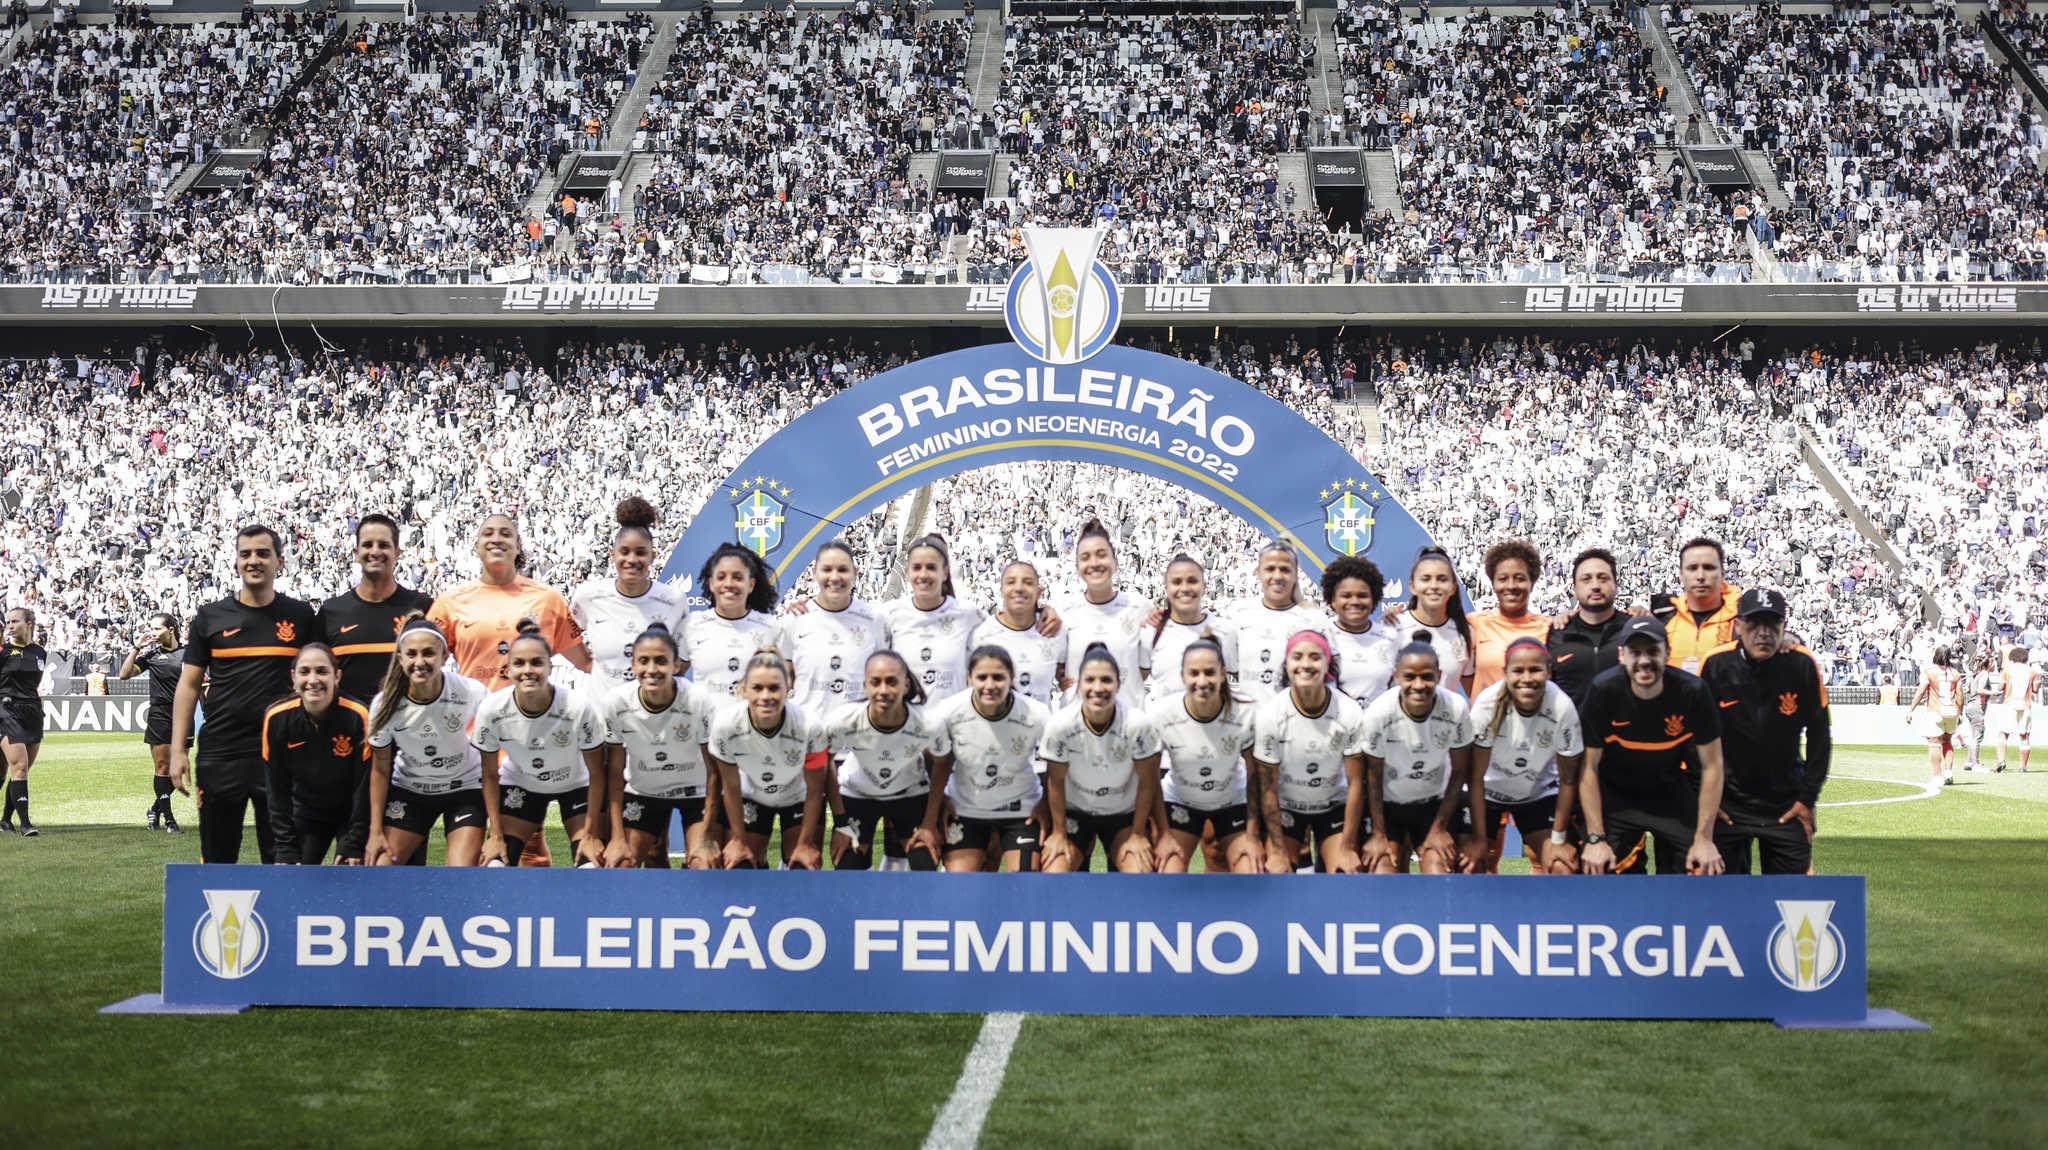 Vessoni on X: CORINTHIANS CAMPEÃO BRASILEIRO FEMININO 2022